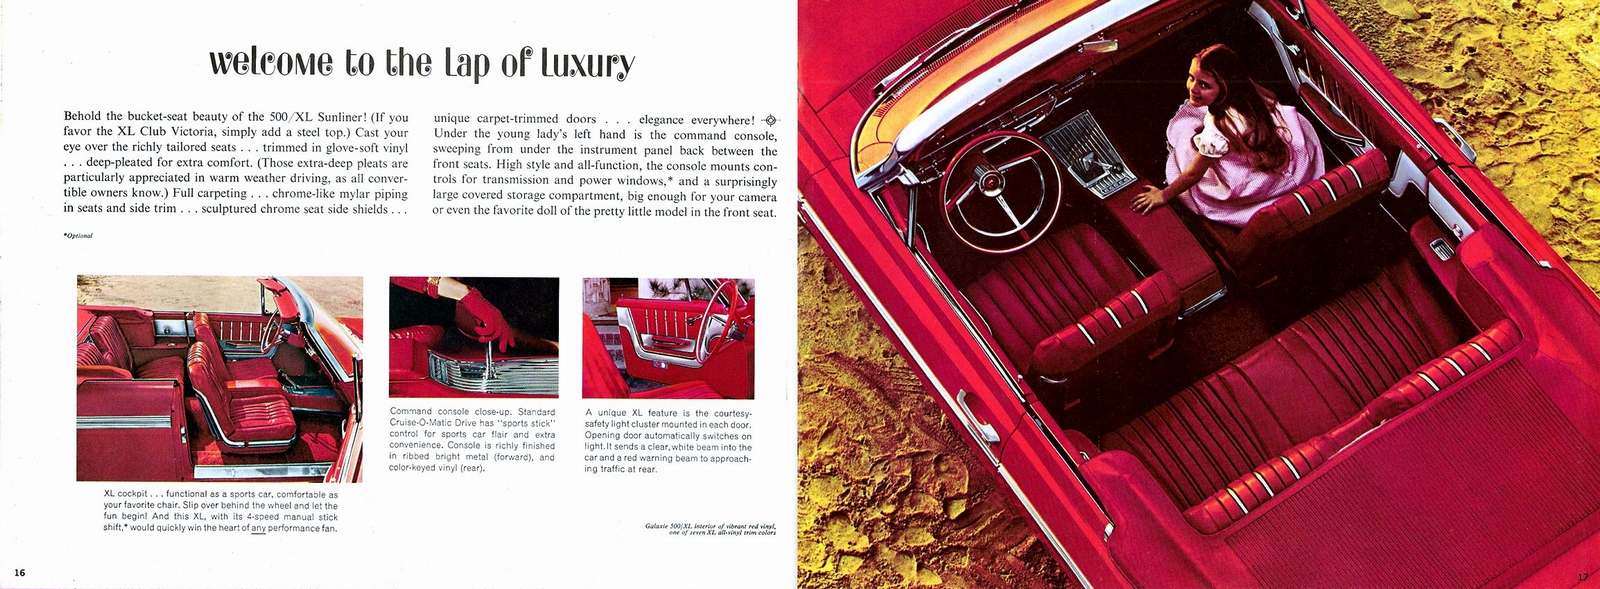 n_1962 Ford Full Size Prestige (Rev)-16-17.jpg